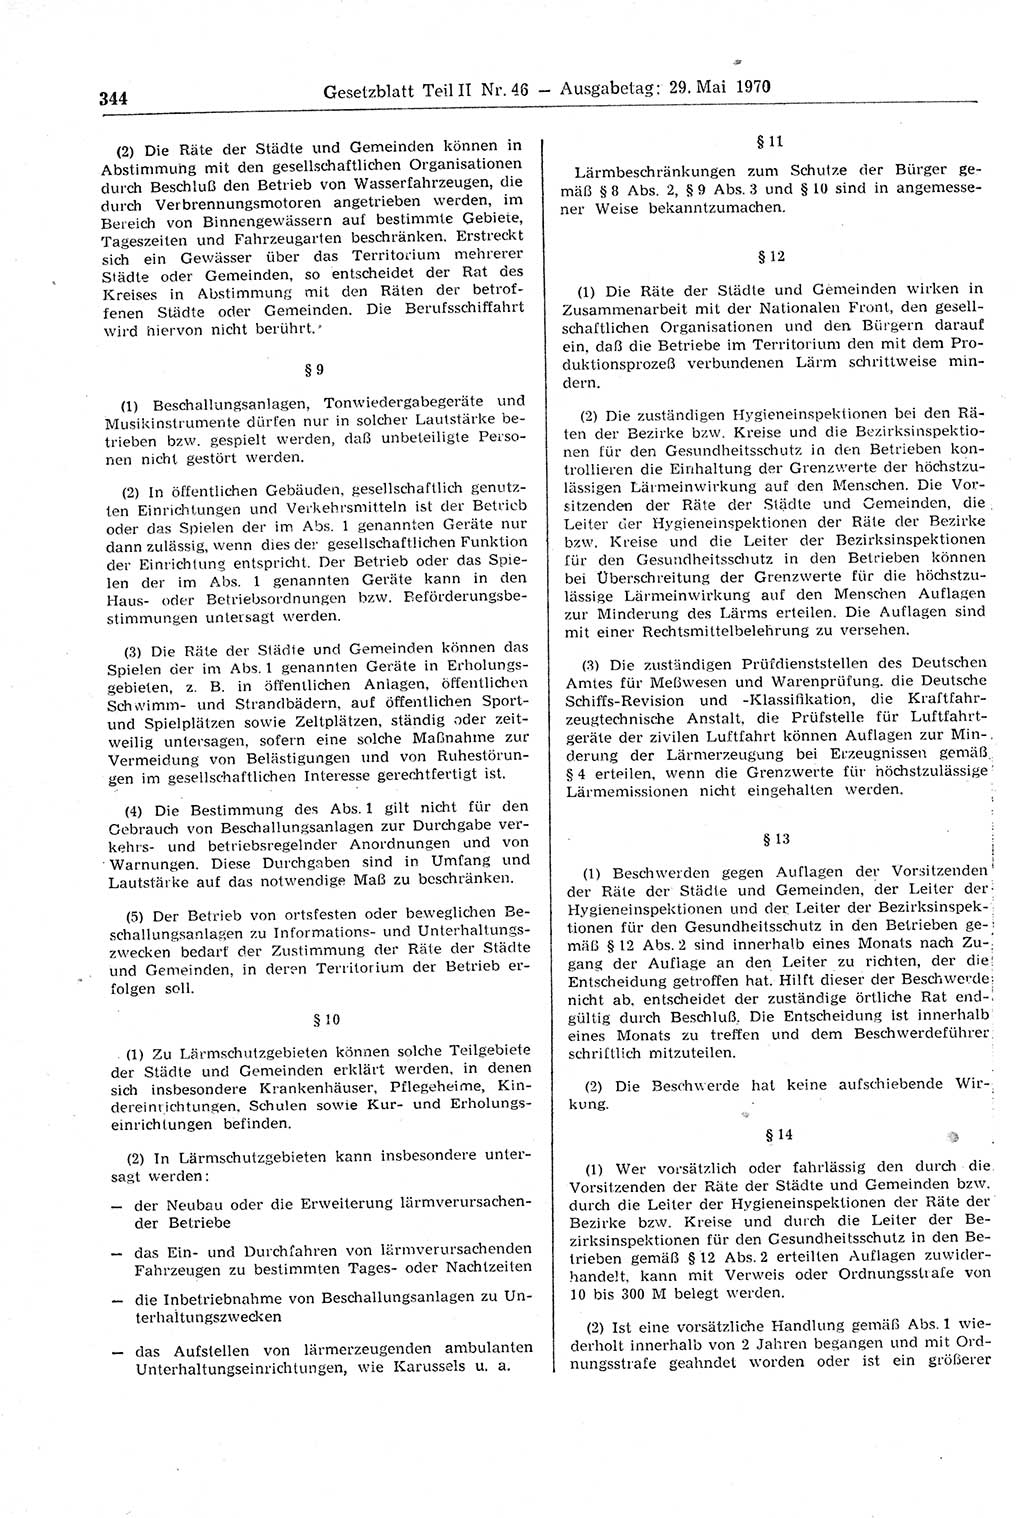 Gesetzblatt (GBl.) der Deutschen Demokratischen Republik (DDR) Teil ⅠⅠ 1970, Seite 344 (GBl. DDR ⅠⅠ 1970, S. 344)